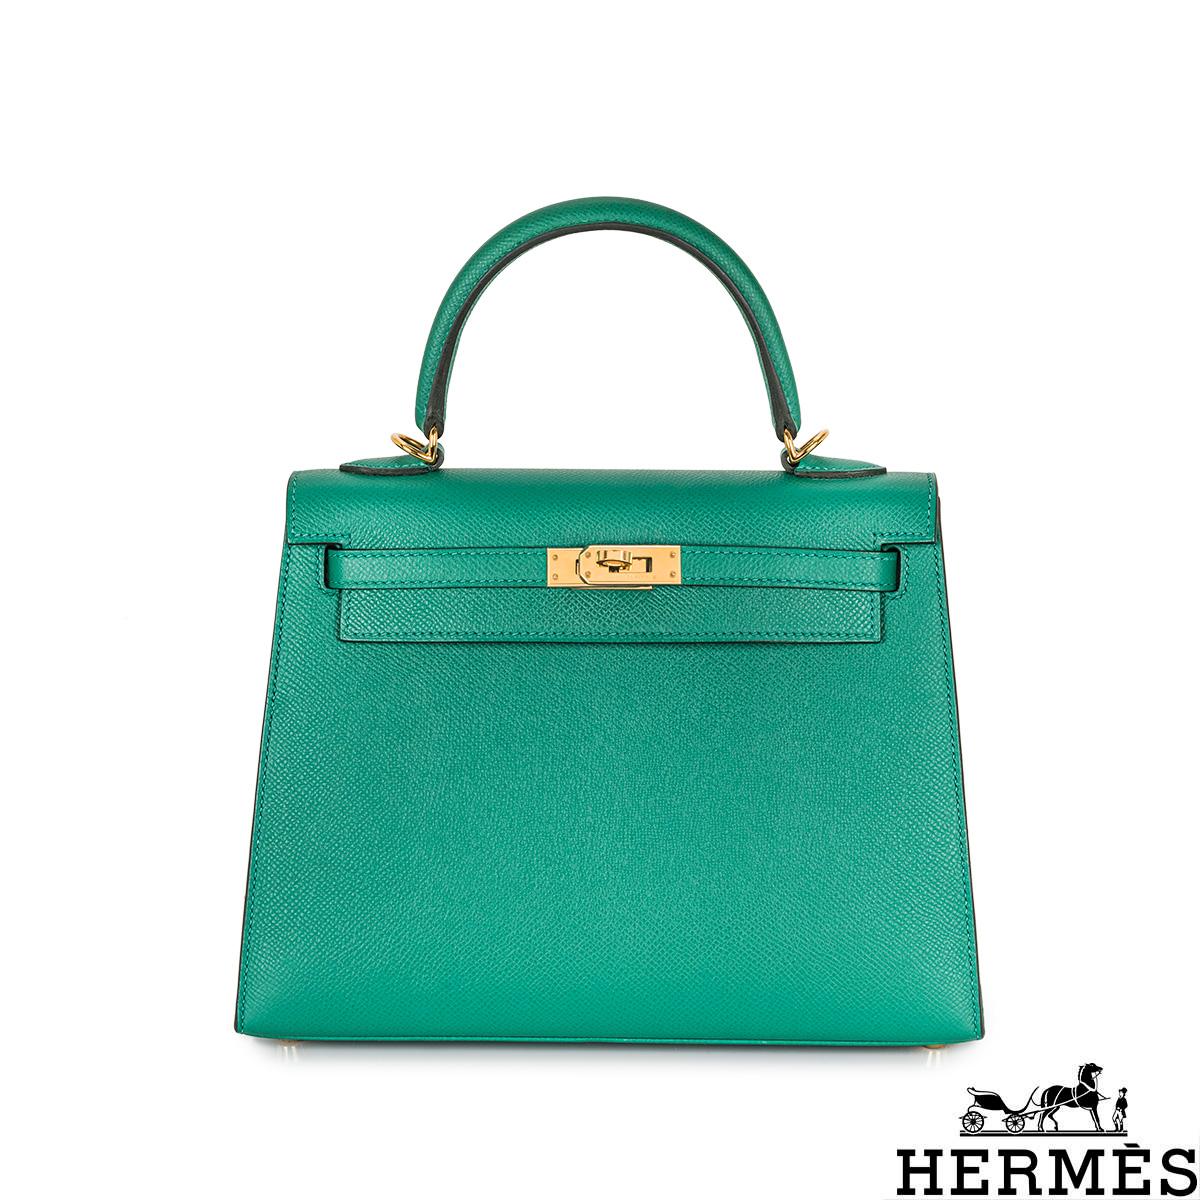 Eine wunderschöne Hermès 25cm Kelly Tasche. Das Äußere dieser Kelly ist im Sellier-Stil in Vert Verone Veau Epsom-Leder gehalten. Das Vert Verone Epsom Leder wird durch goldfarbene Beschläge und tonale Nähte ergänzt. Sie verfügt über einen